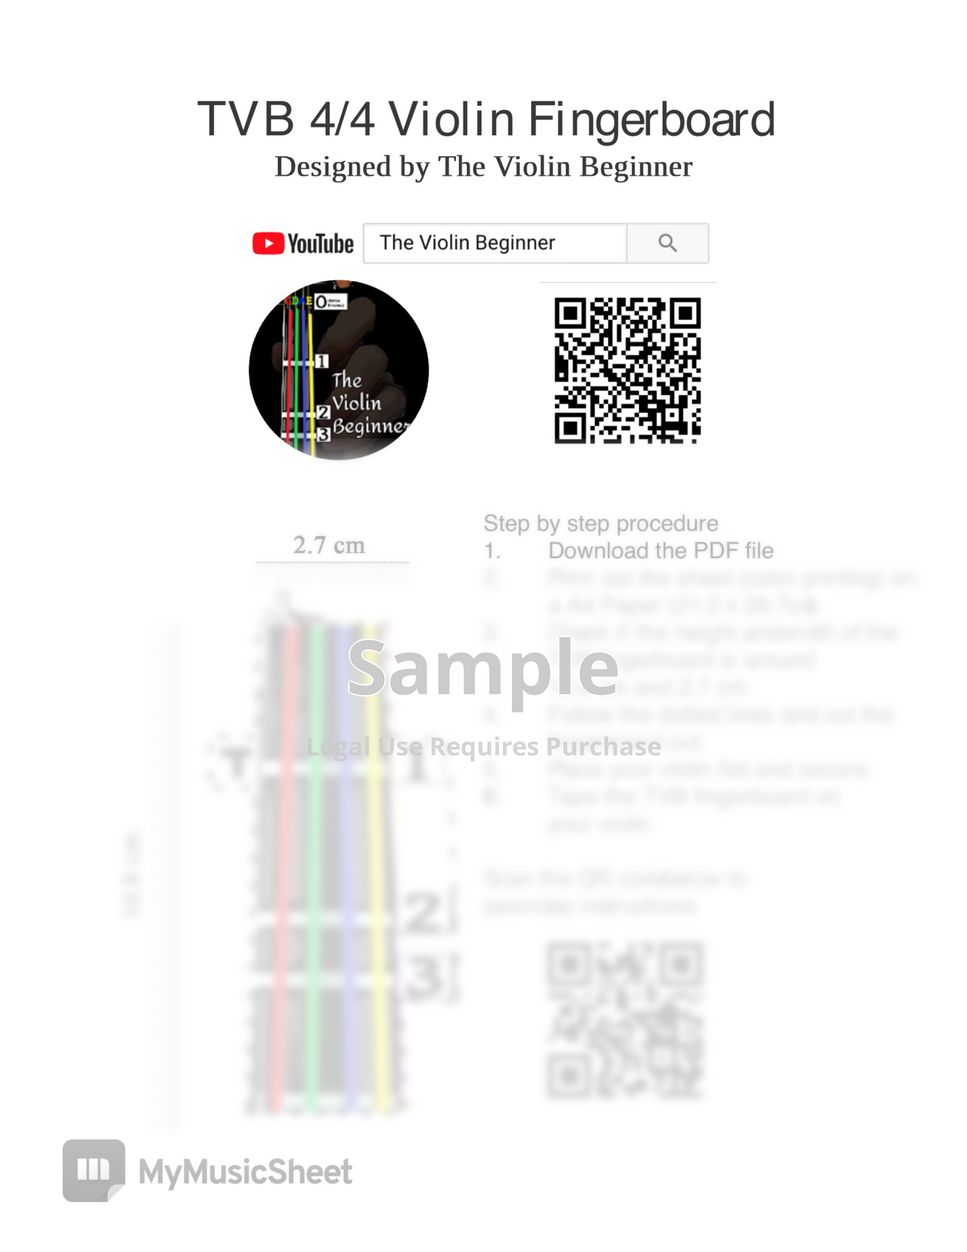 Folk - 4/4 TVB Violin Fingerboard + Auld Lang Syne by The Violin Beginner